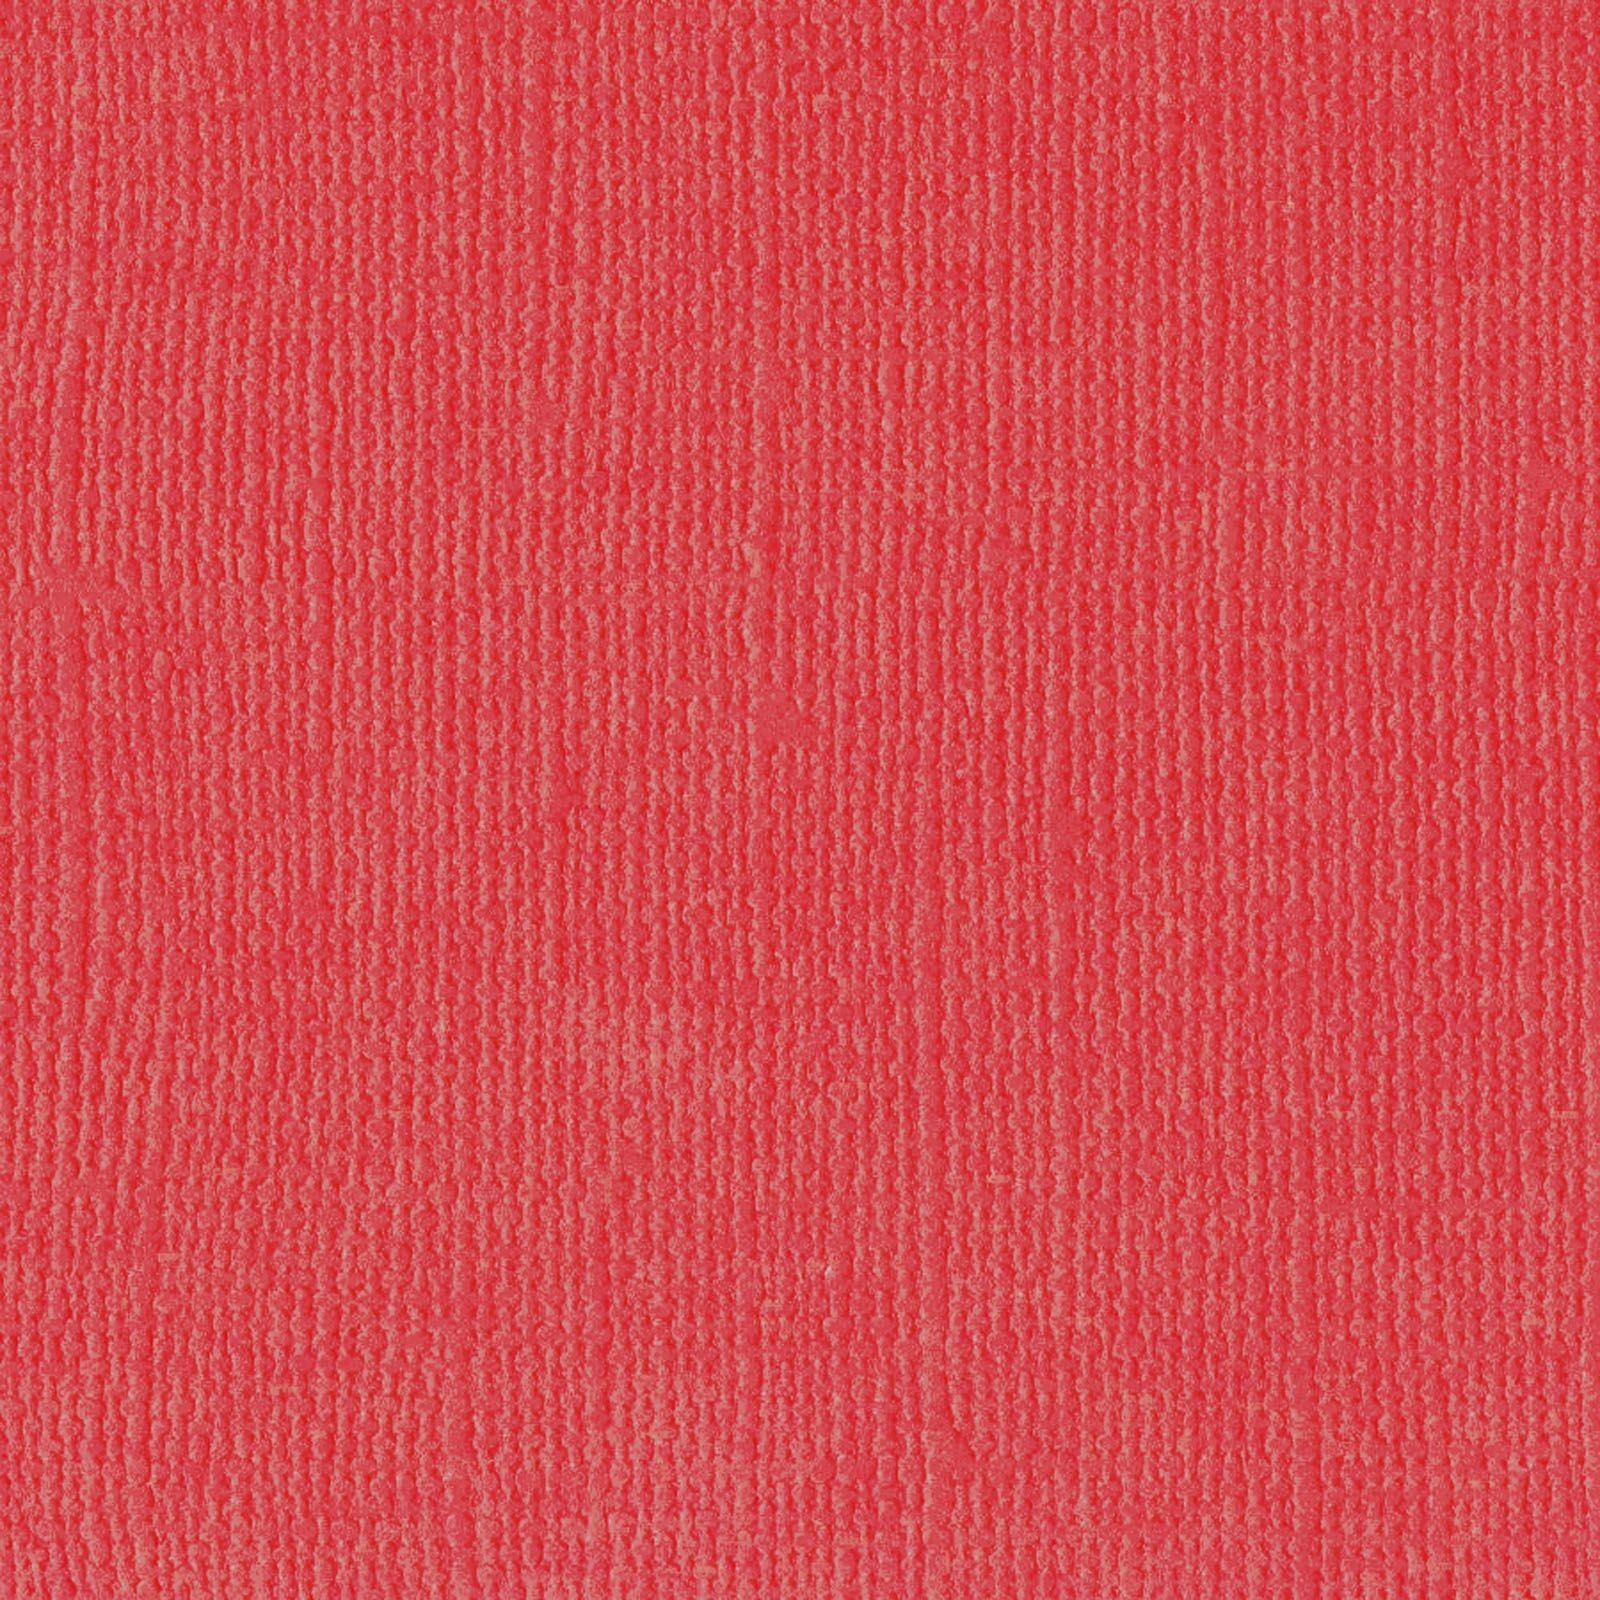 Fogli Colorati A4 Rosso 100Fogli vendita online - negozio cinese